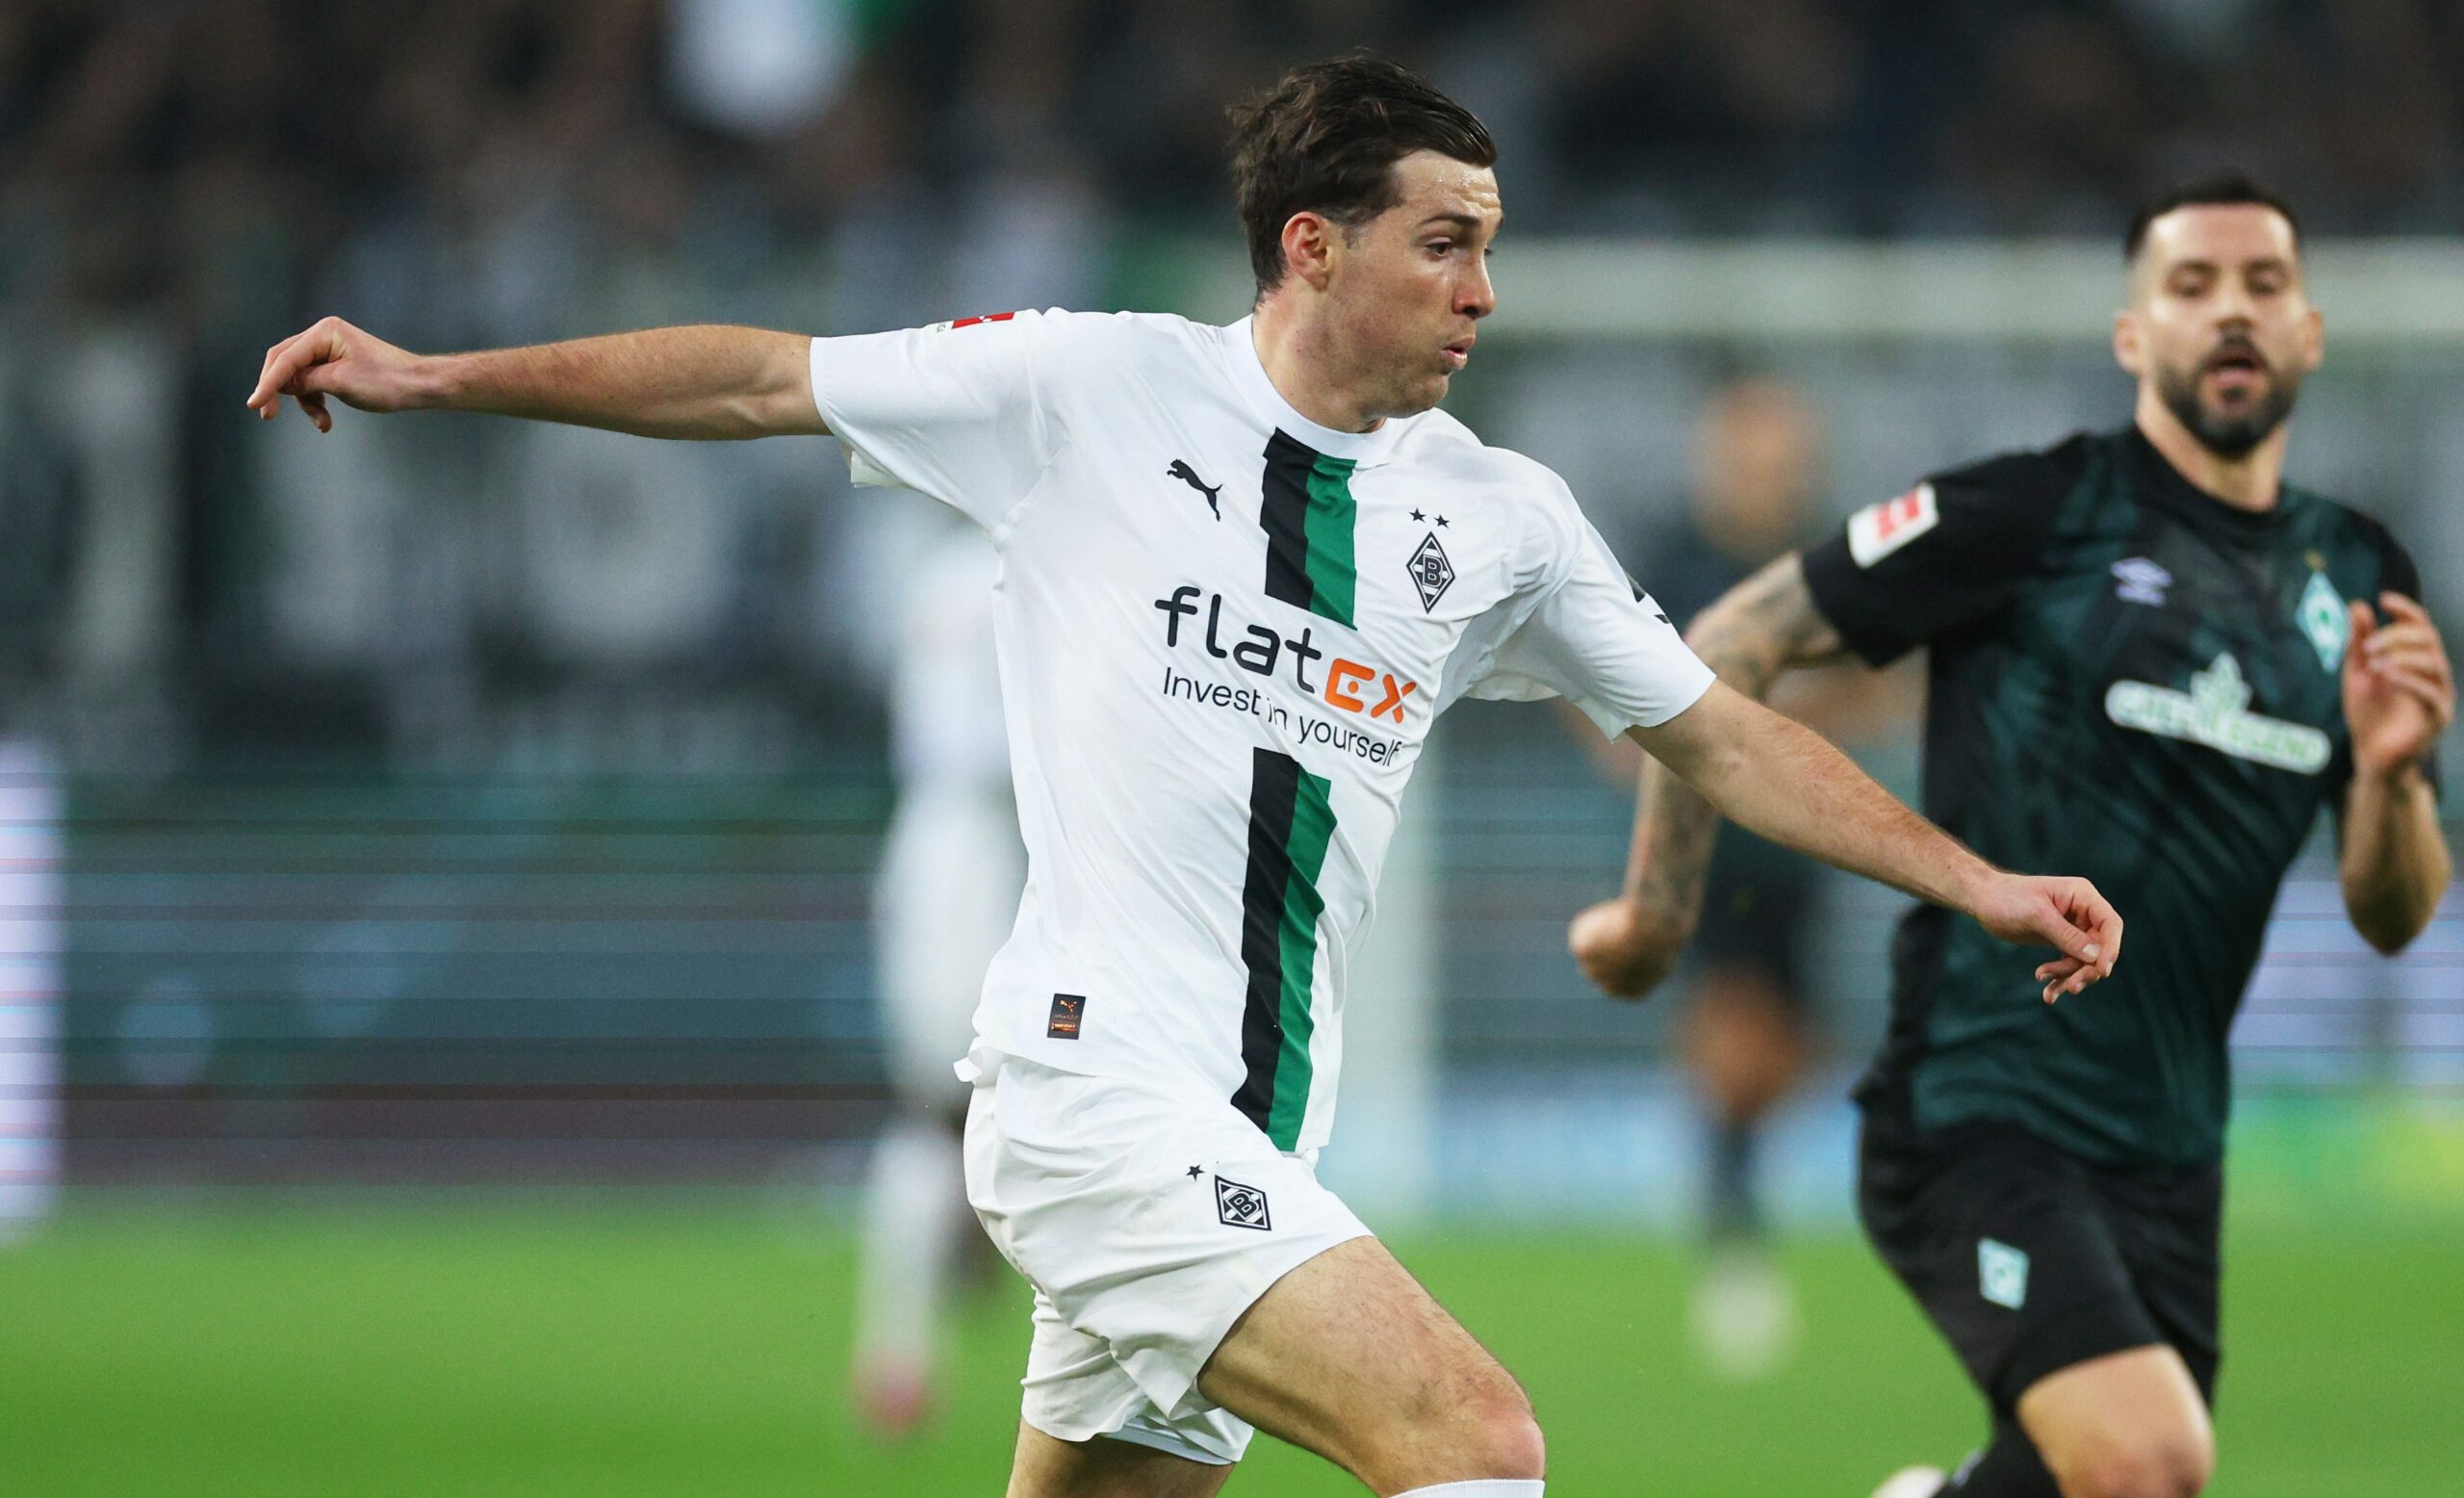 Scally signs new Borussia Monchengladbach contract through 2027